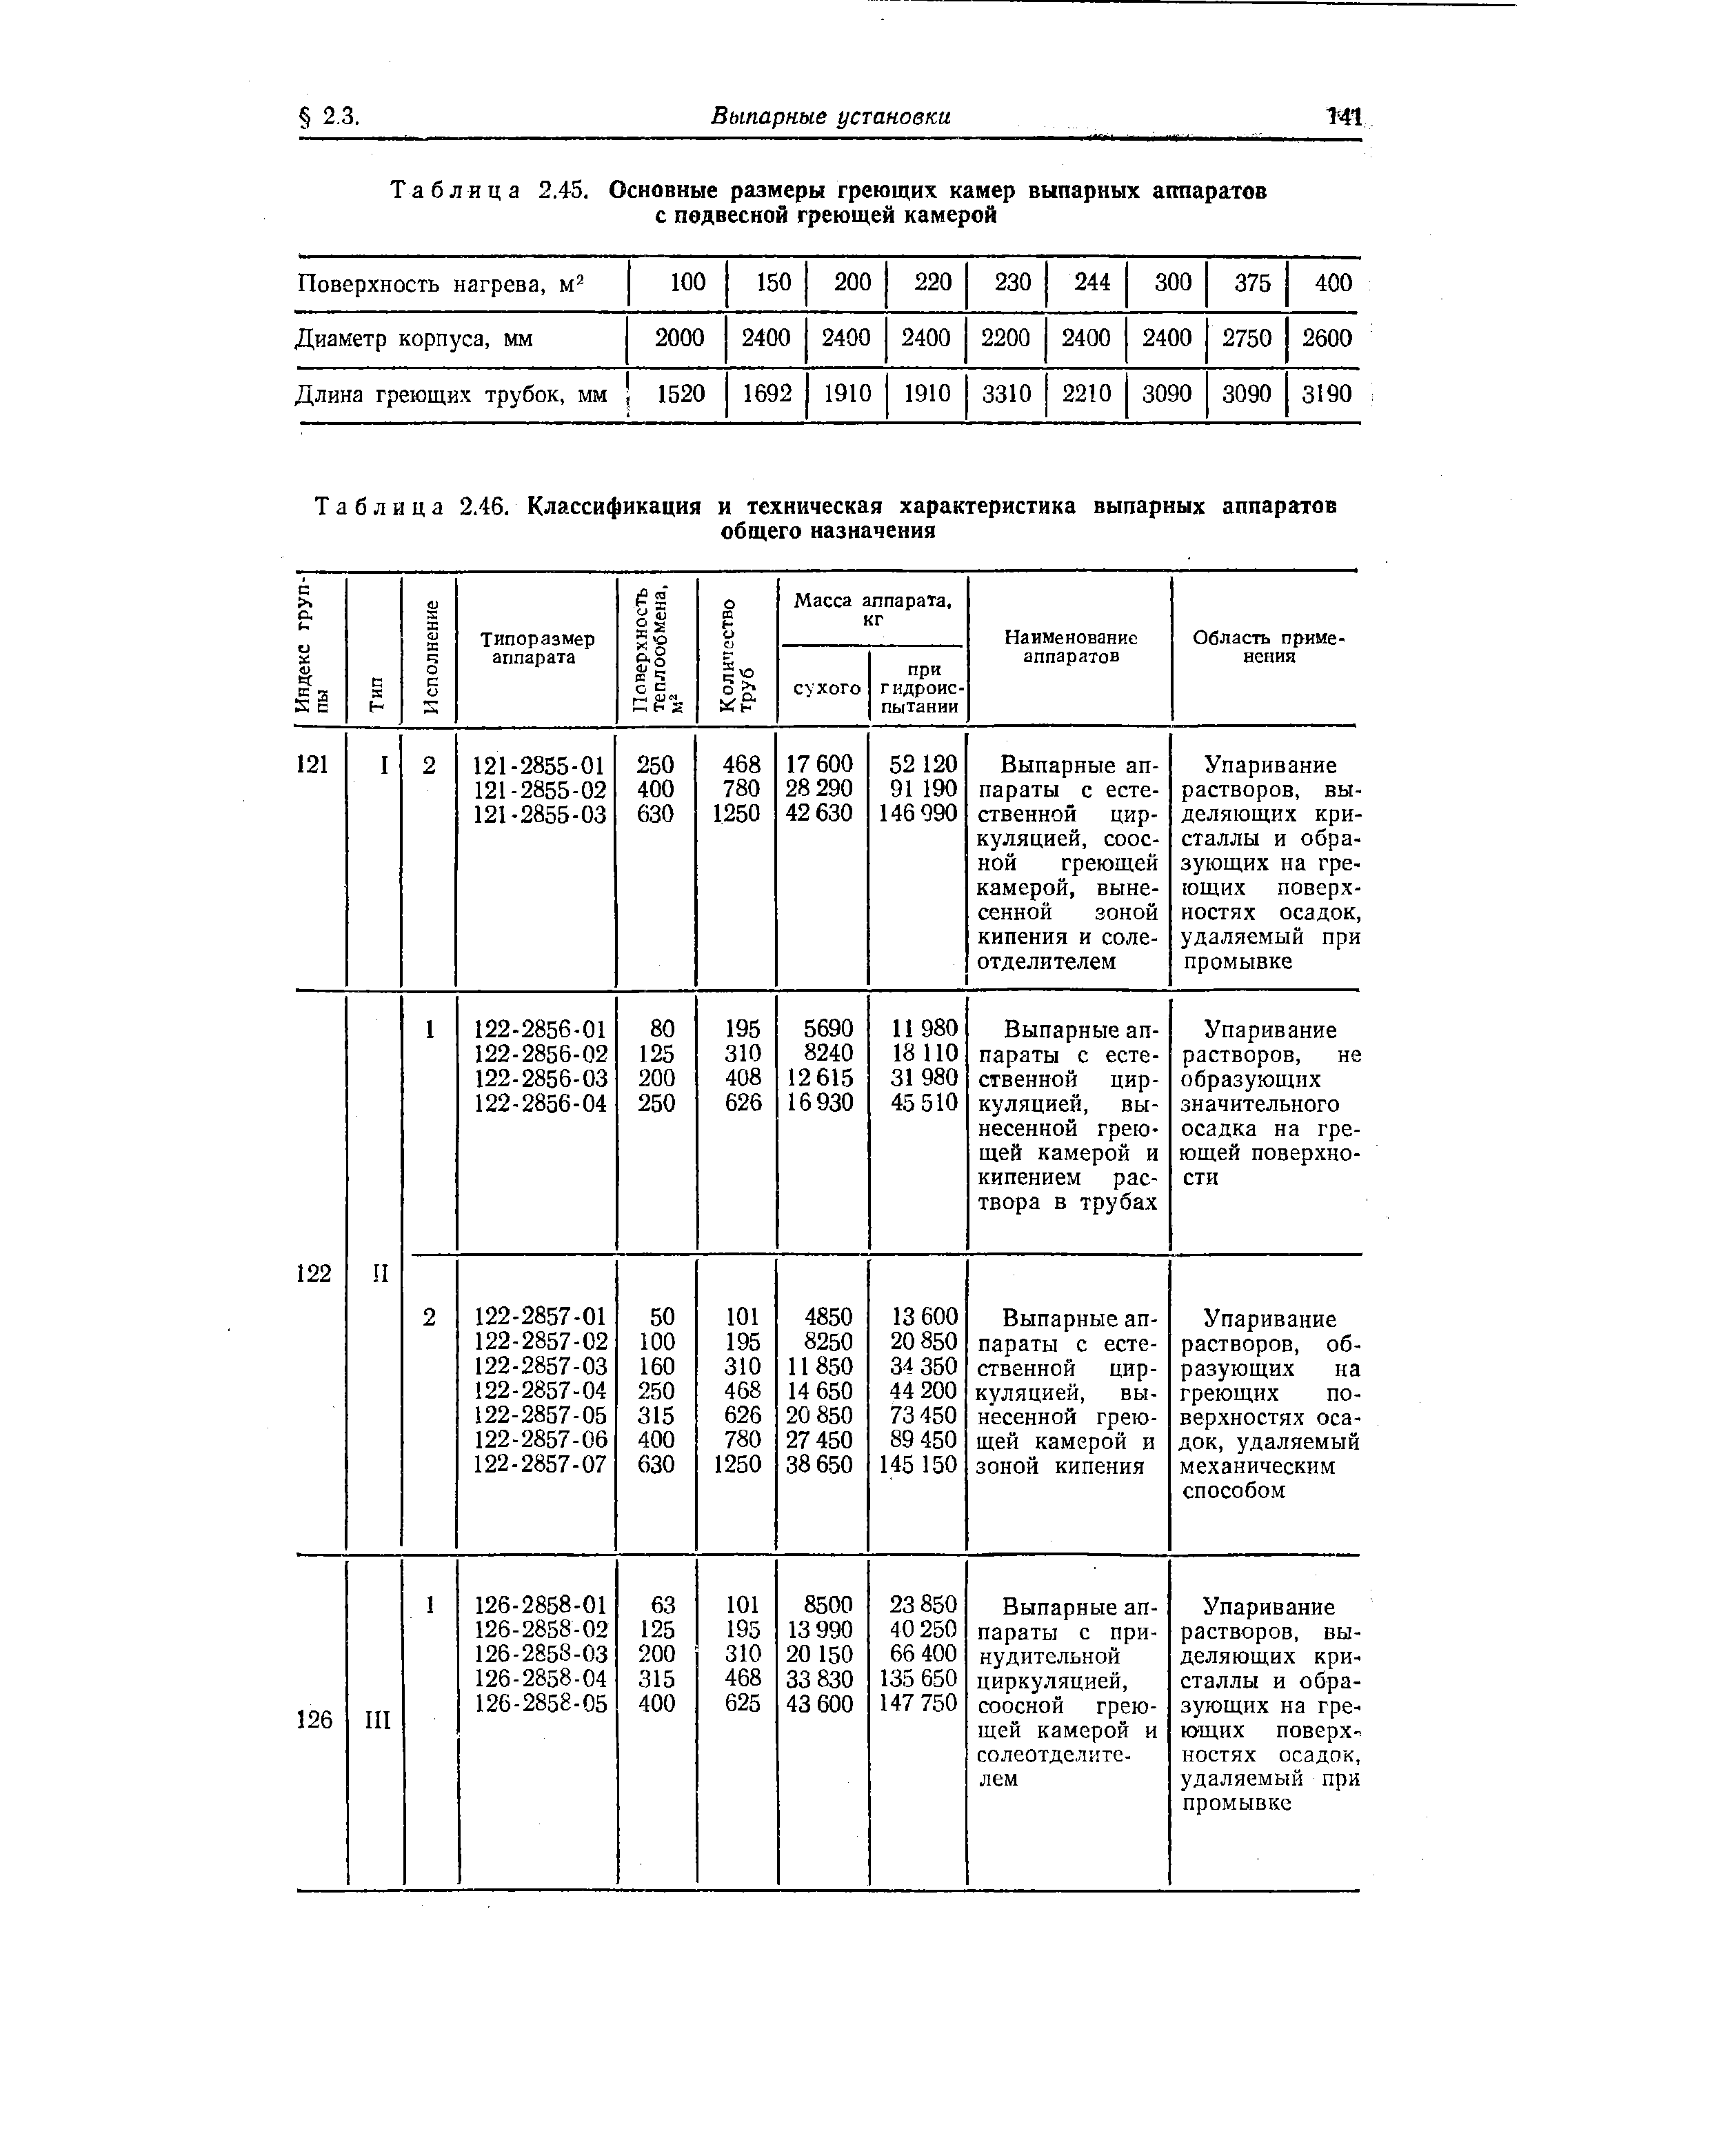 Таблица 2.46. Классификация и техническая характеристика выпарных аппаратов
